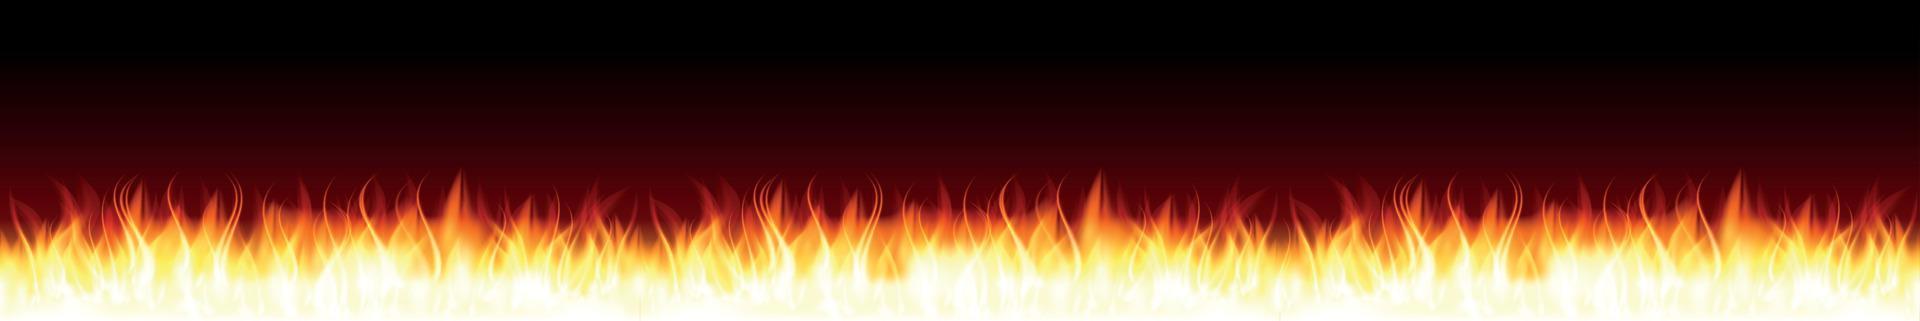 fiamma ardente di fuoco. illustrazione vettoriale